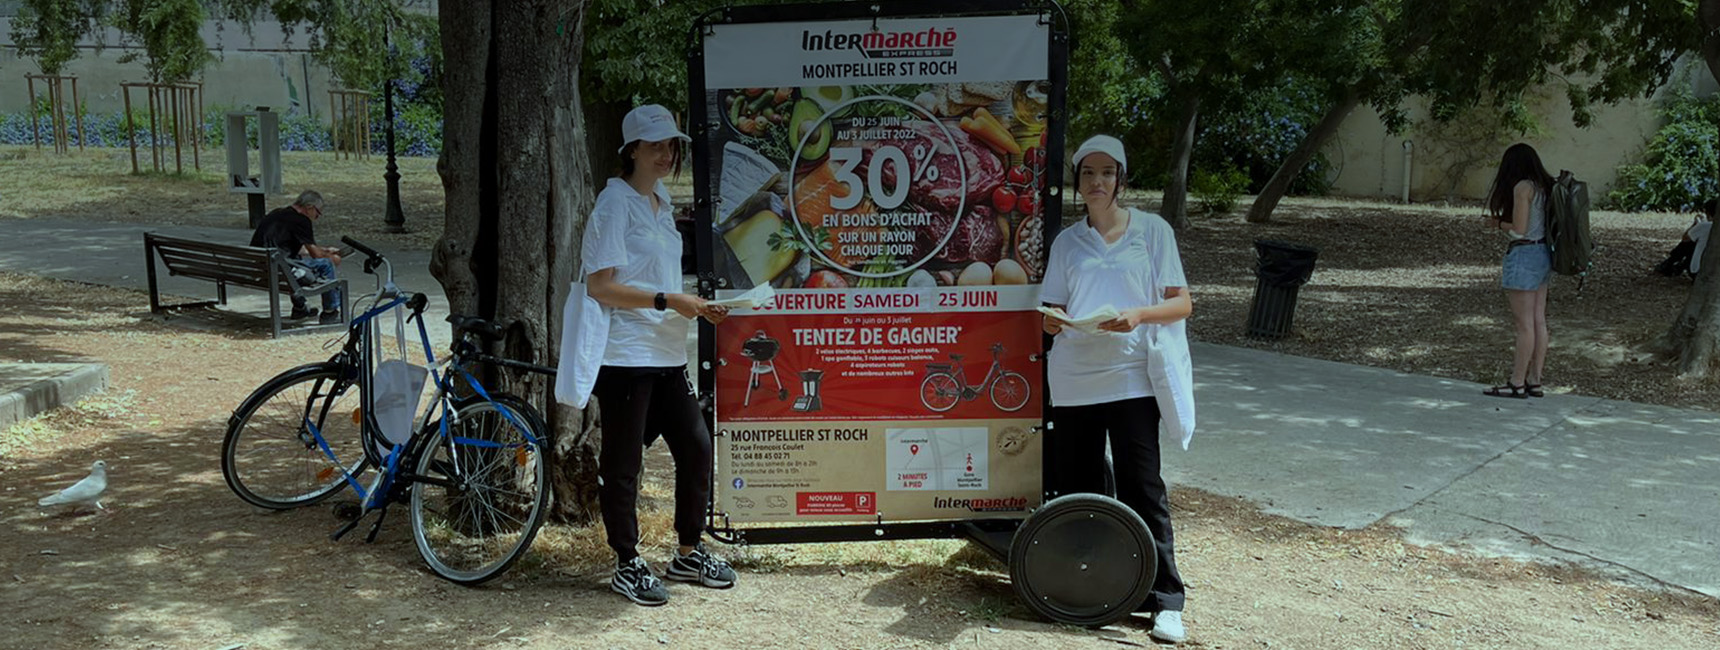 header opération Intermarché - Keemia Montpellier région Languedoc Roussillon